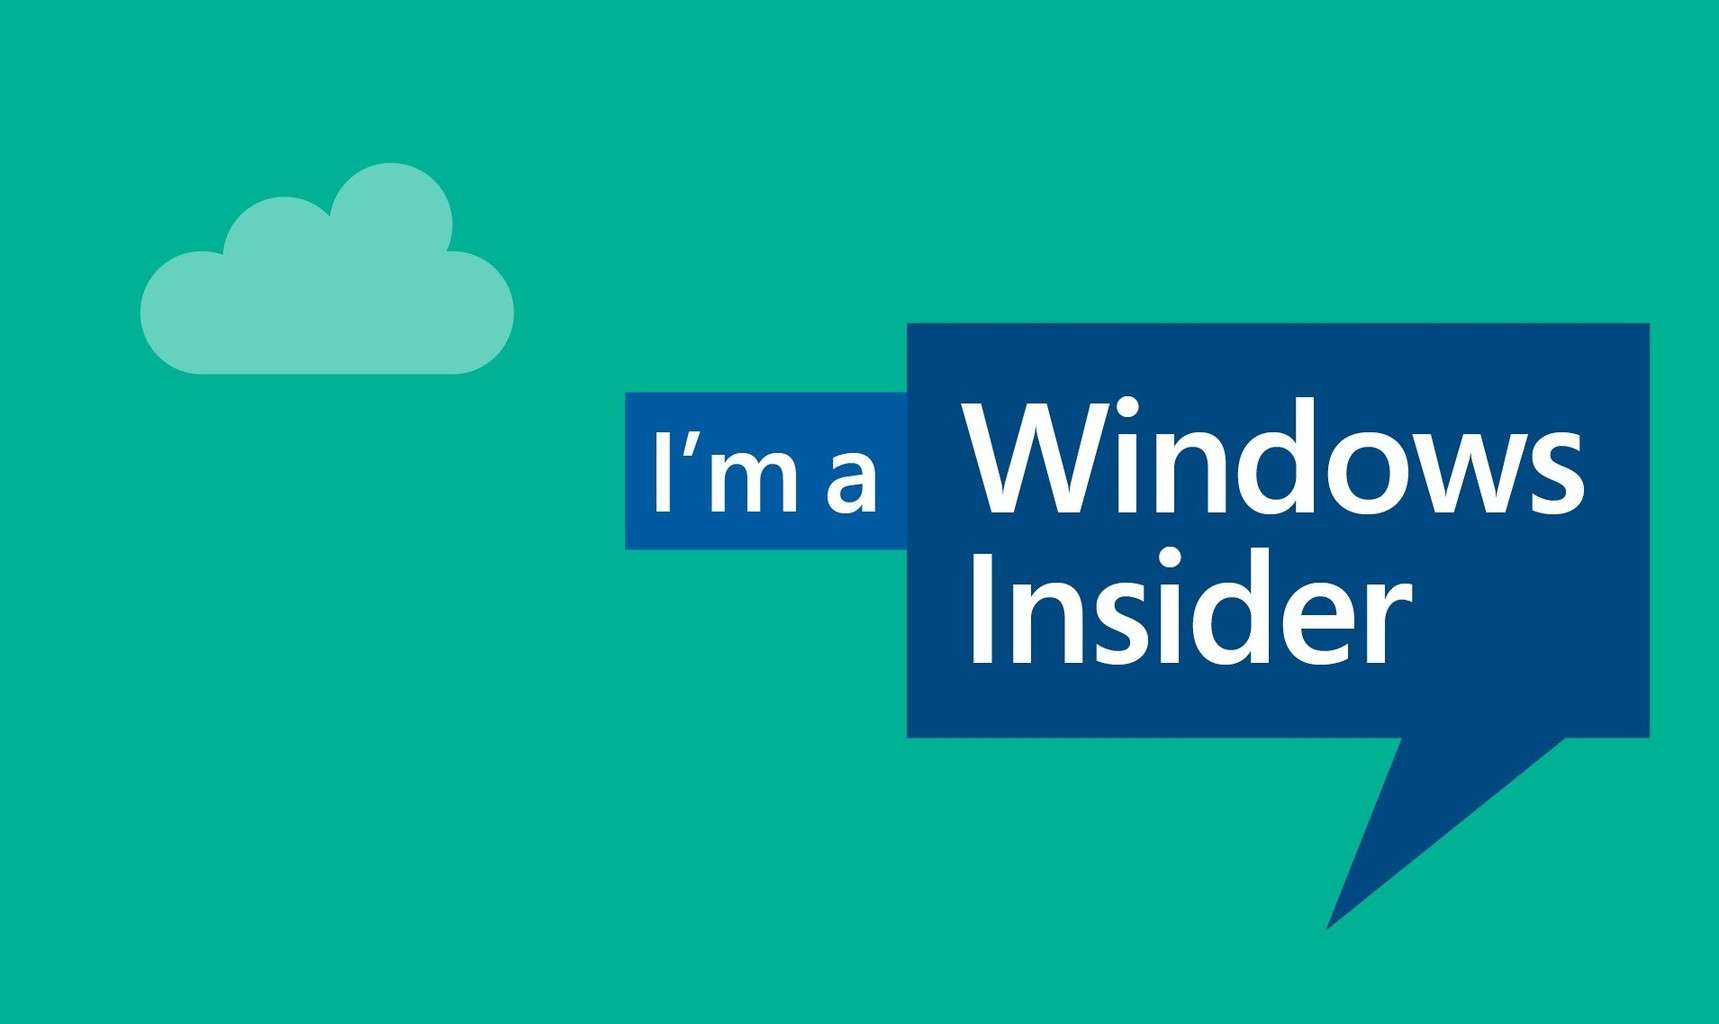 Windows Insider Program crosses 10 million-member mark